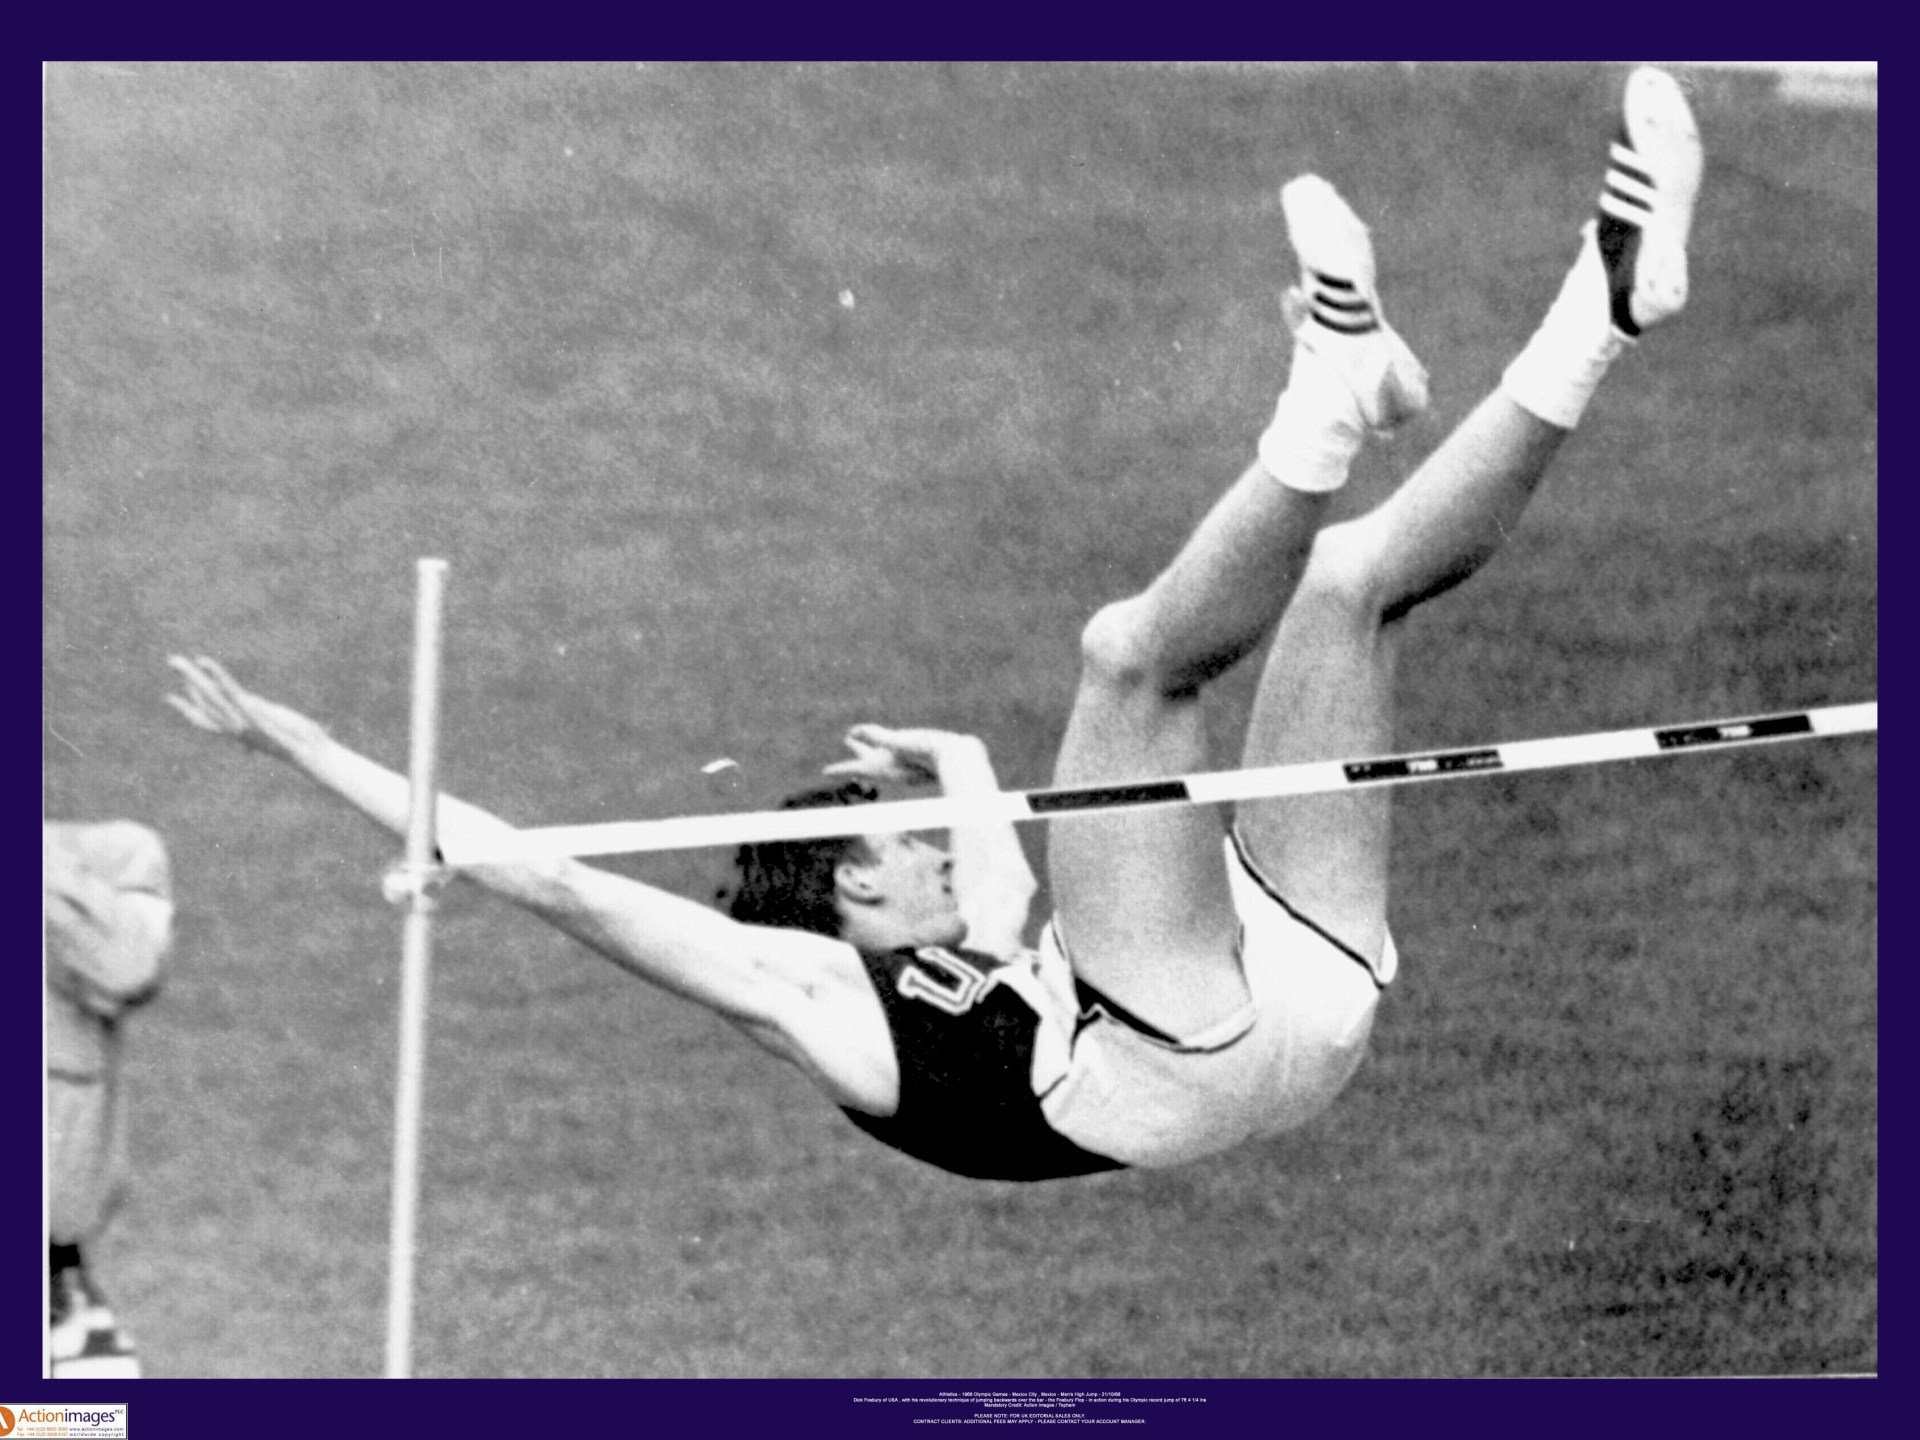 Dick Fosbury, high jump pioneer, dies aged 76